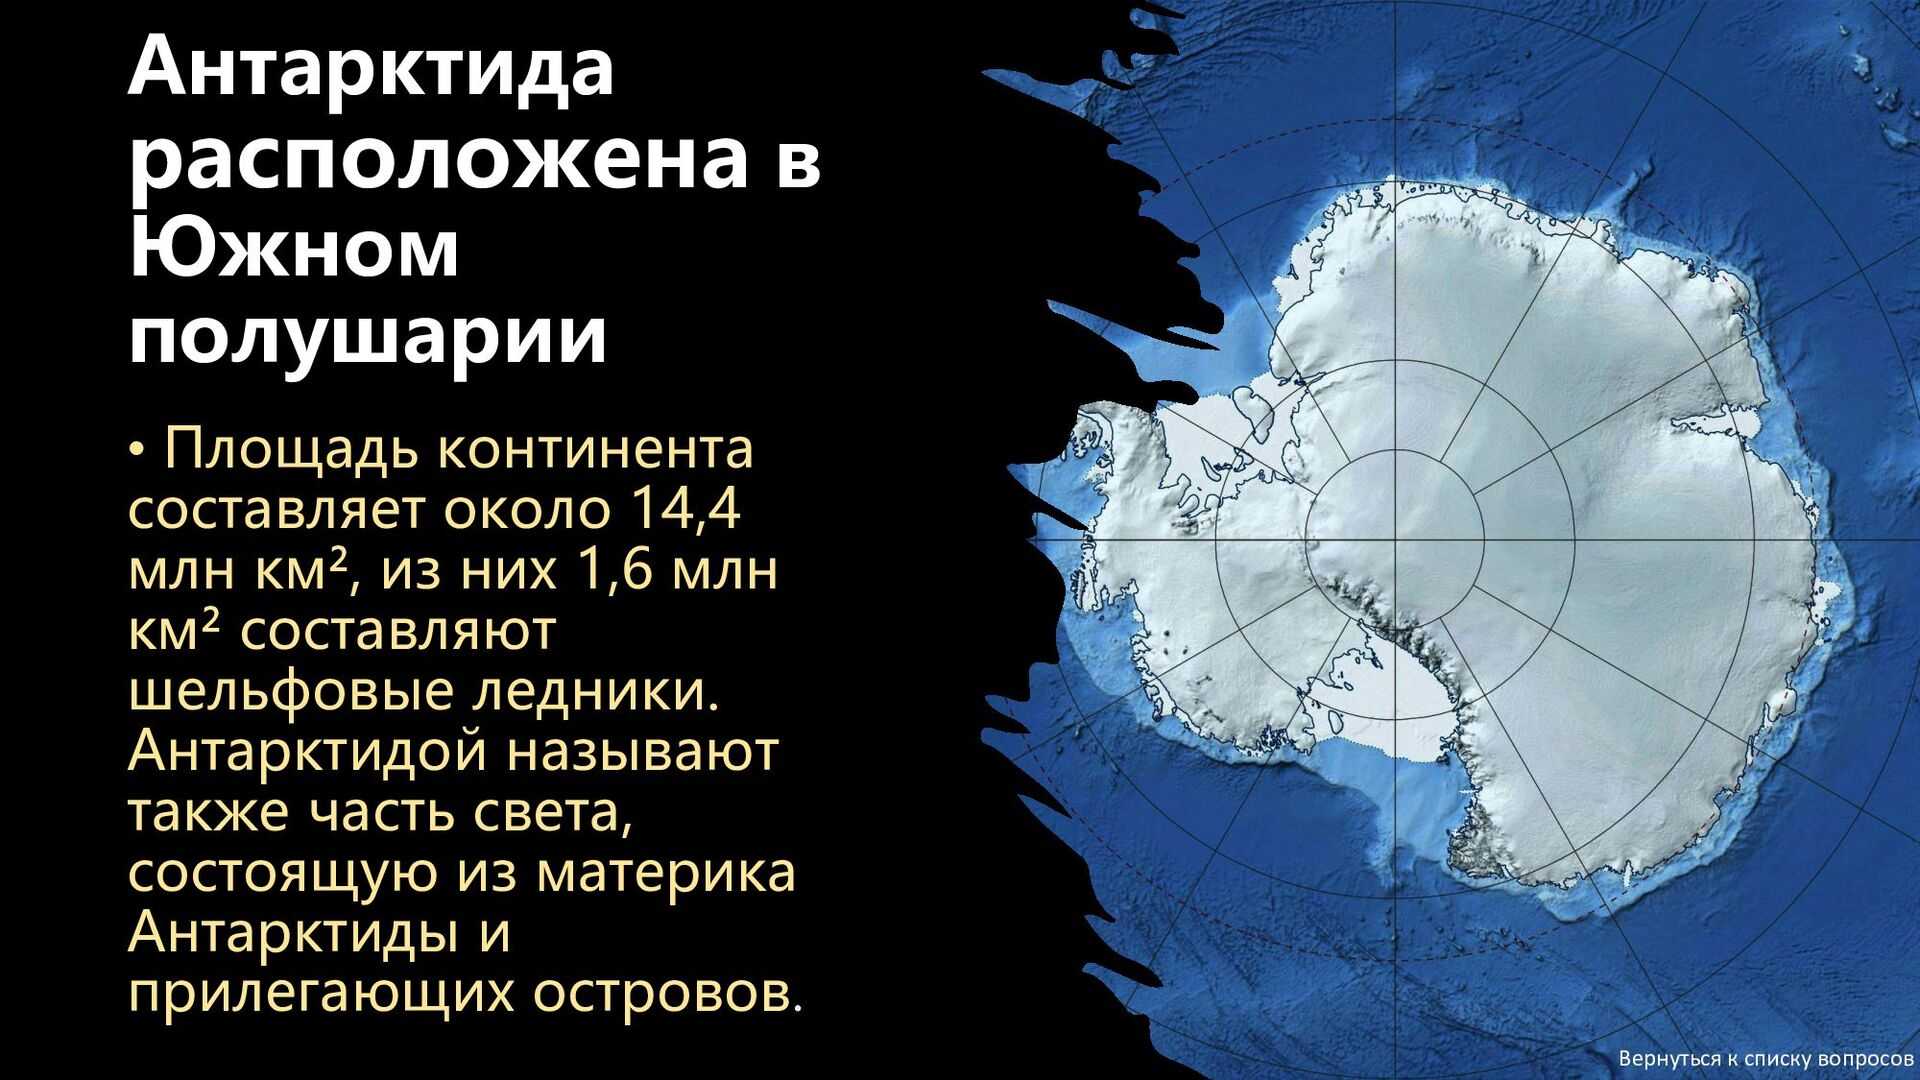 Местоположение антарктиды. Расположение Антарктиды. Антарктида на карте. Антарктида расположена в полушариях. Антарктида на полушарии.